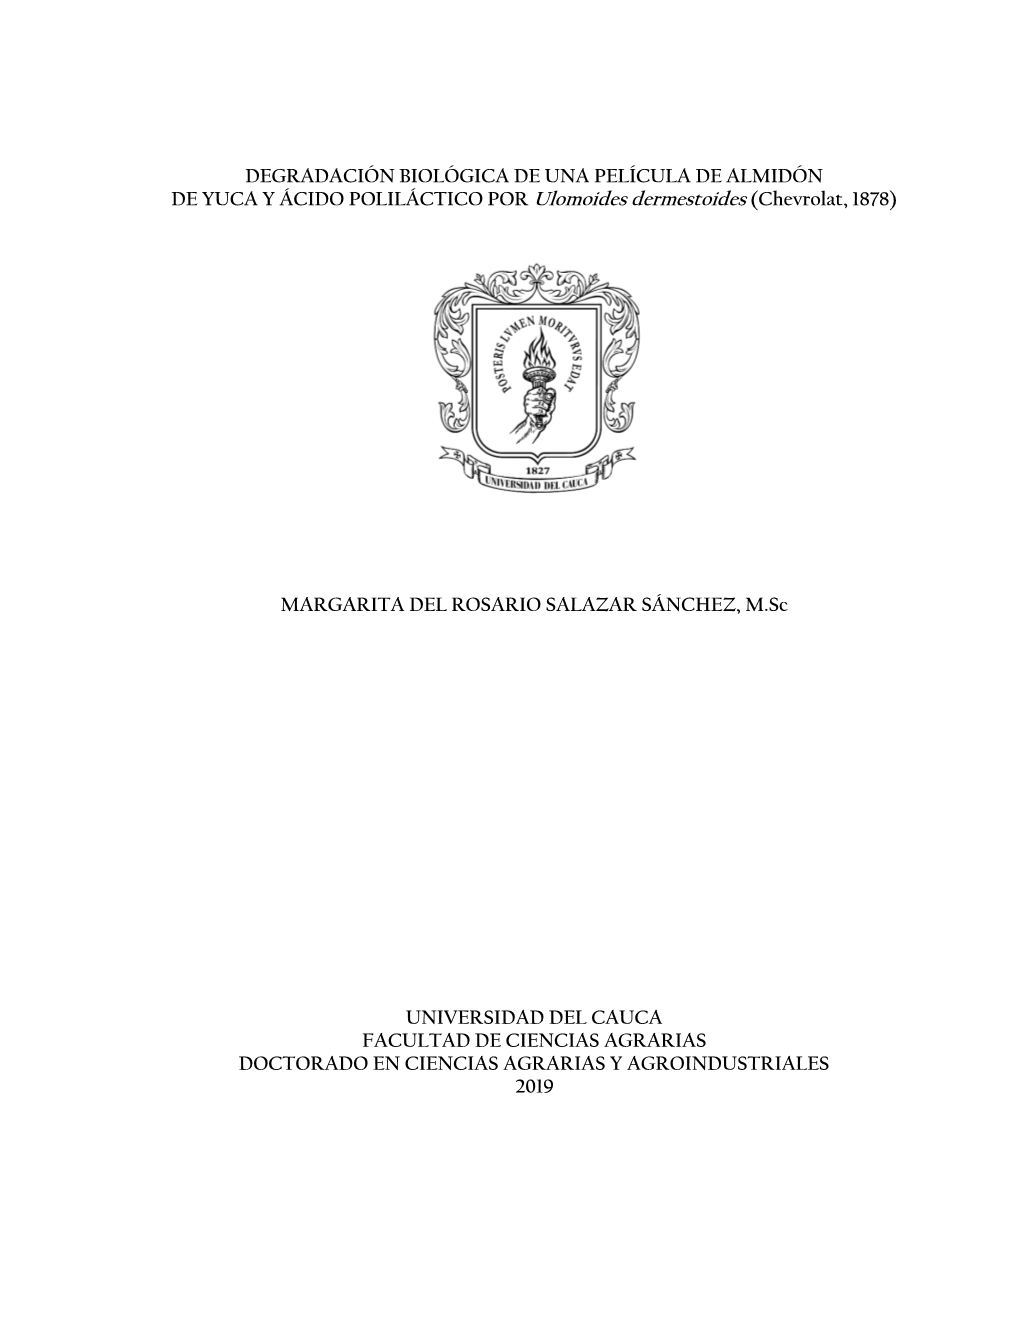 DEGRADACIÓN BIOLÓGICA DE UNA PELÍCULA DE ALMIDÓN DE YUCA Y ÁCIDO POLILÁCTICO POR Ulomoides Dermestoides (Chevrolat, 1878)